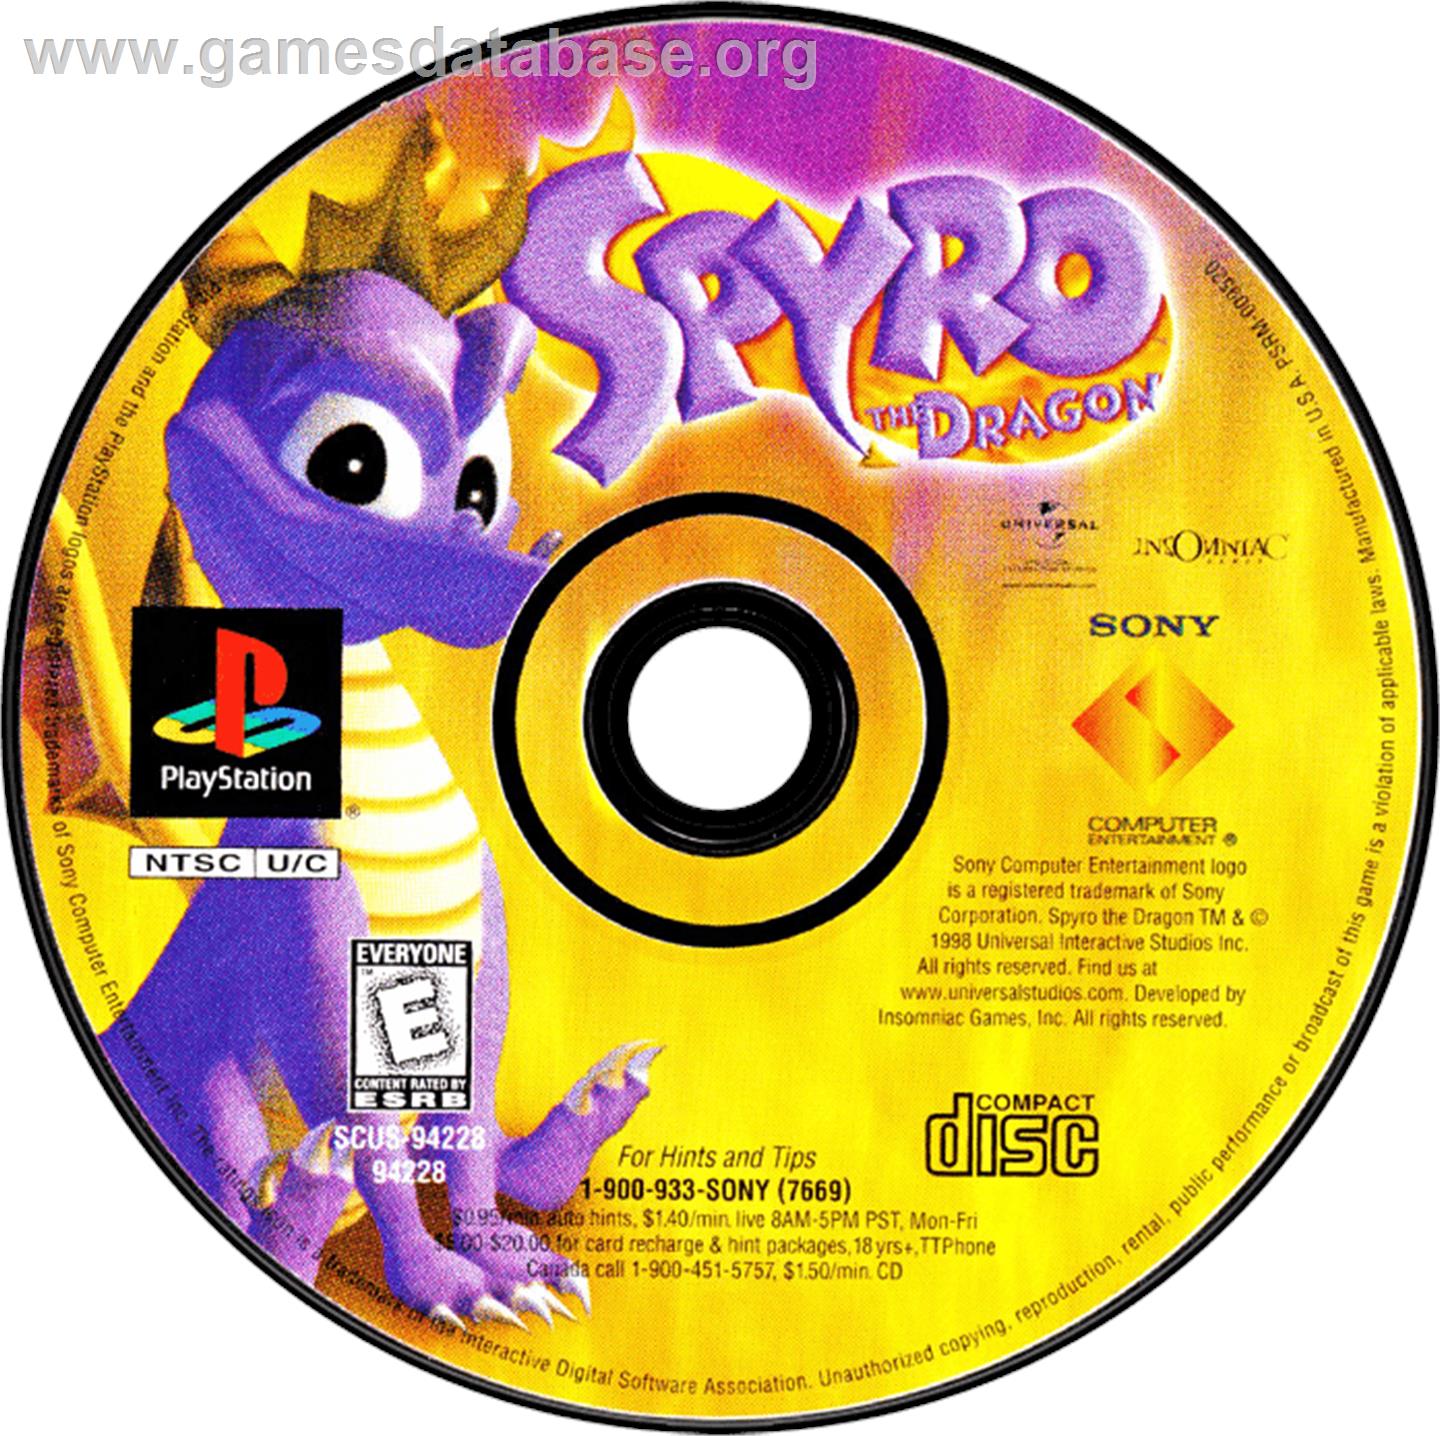 Spyro the Dragon - Sony Playstation - Artwork - Disc